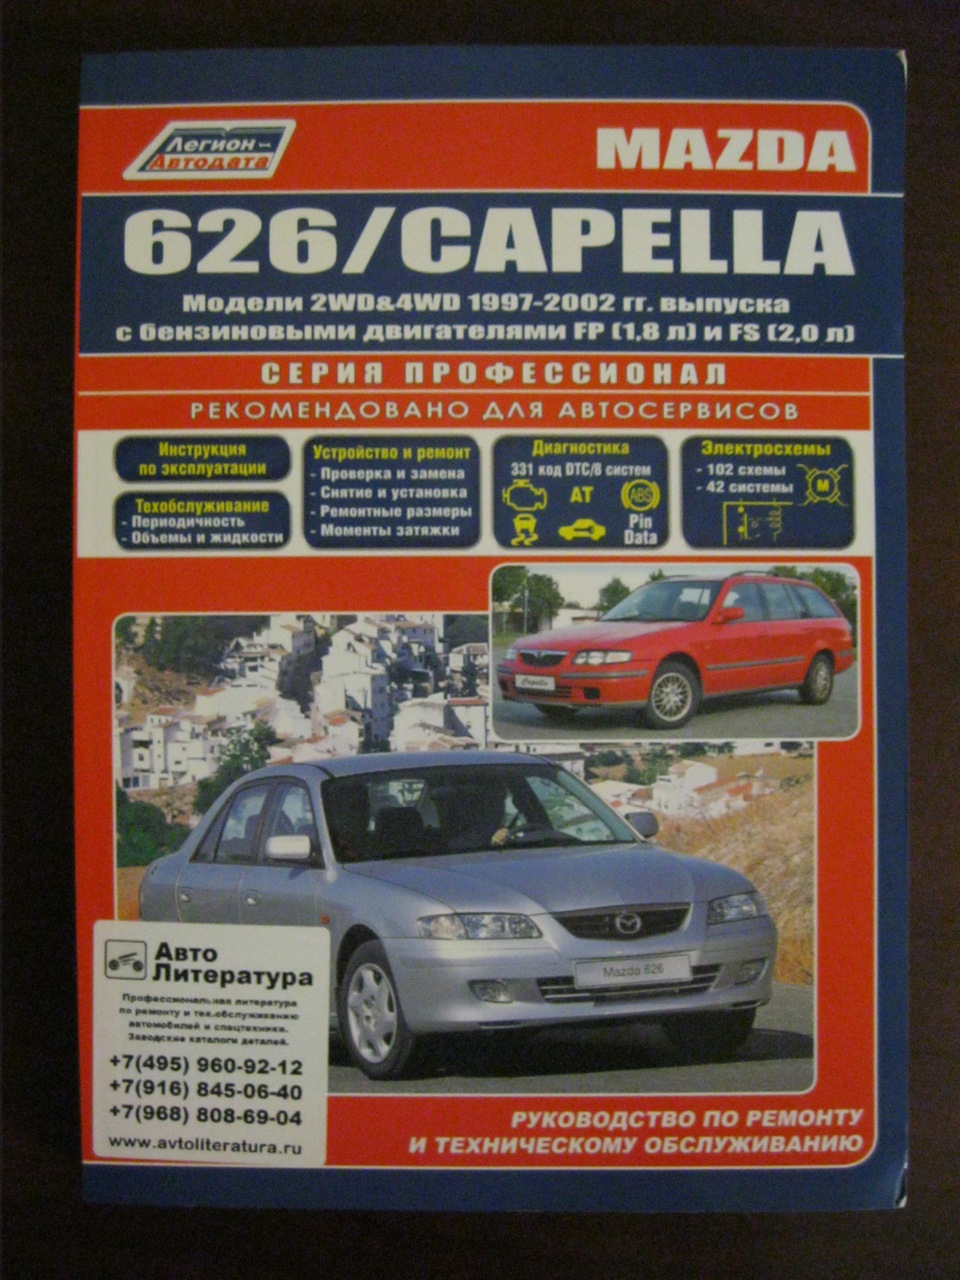 Автолитература. Книга Мазда 626. Книга Мазда капелла 1998 года выпуска. Руководство по ремонту Mazda Capella. Книга по ремонту автомобиля Мазда капелла 1999 год.